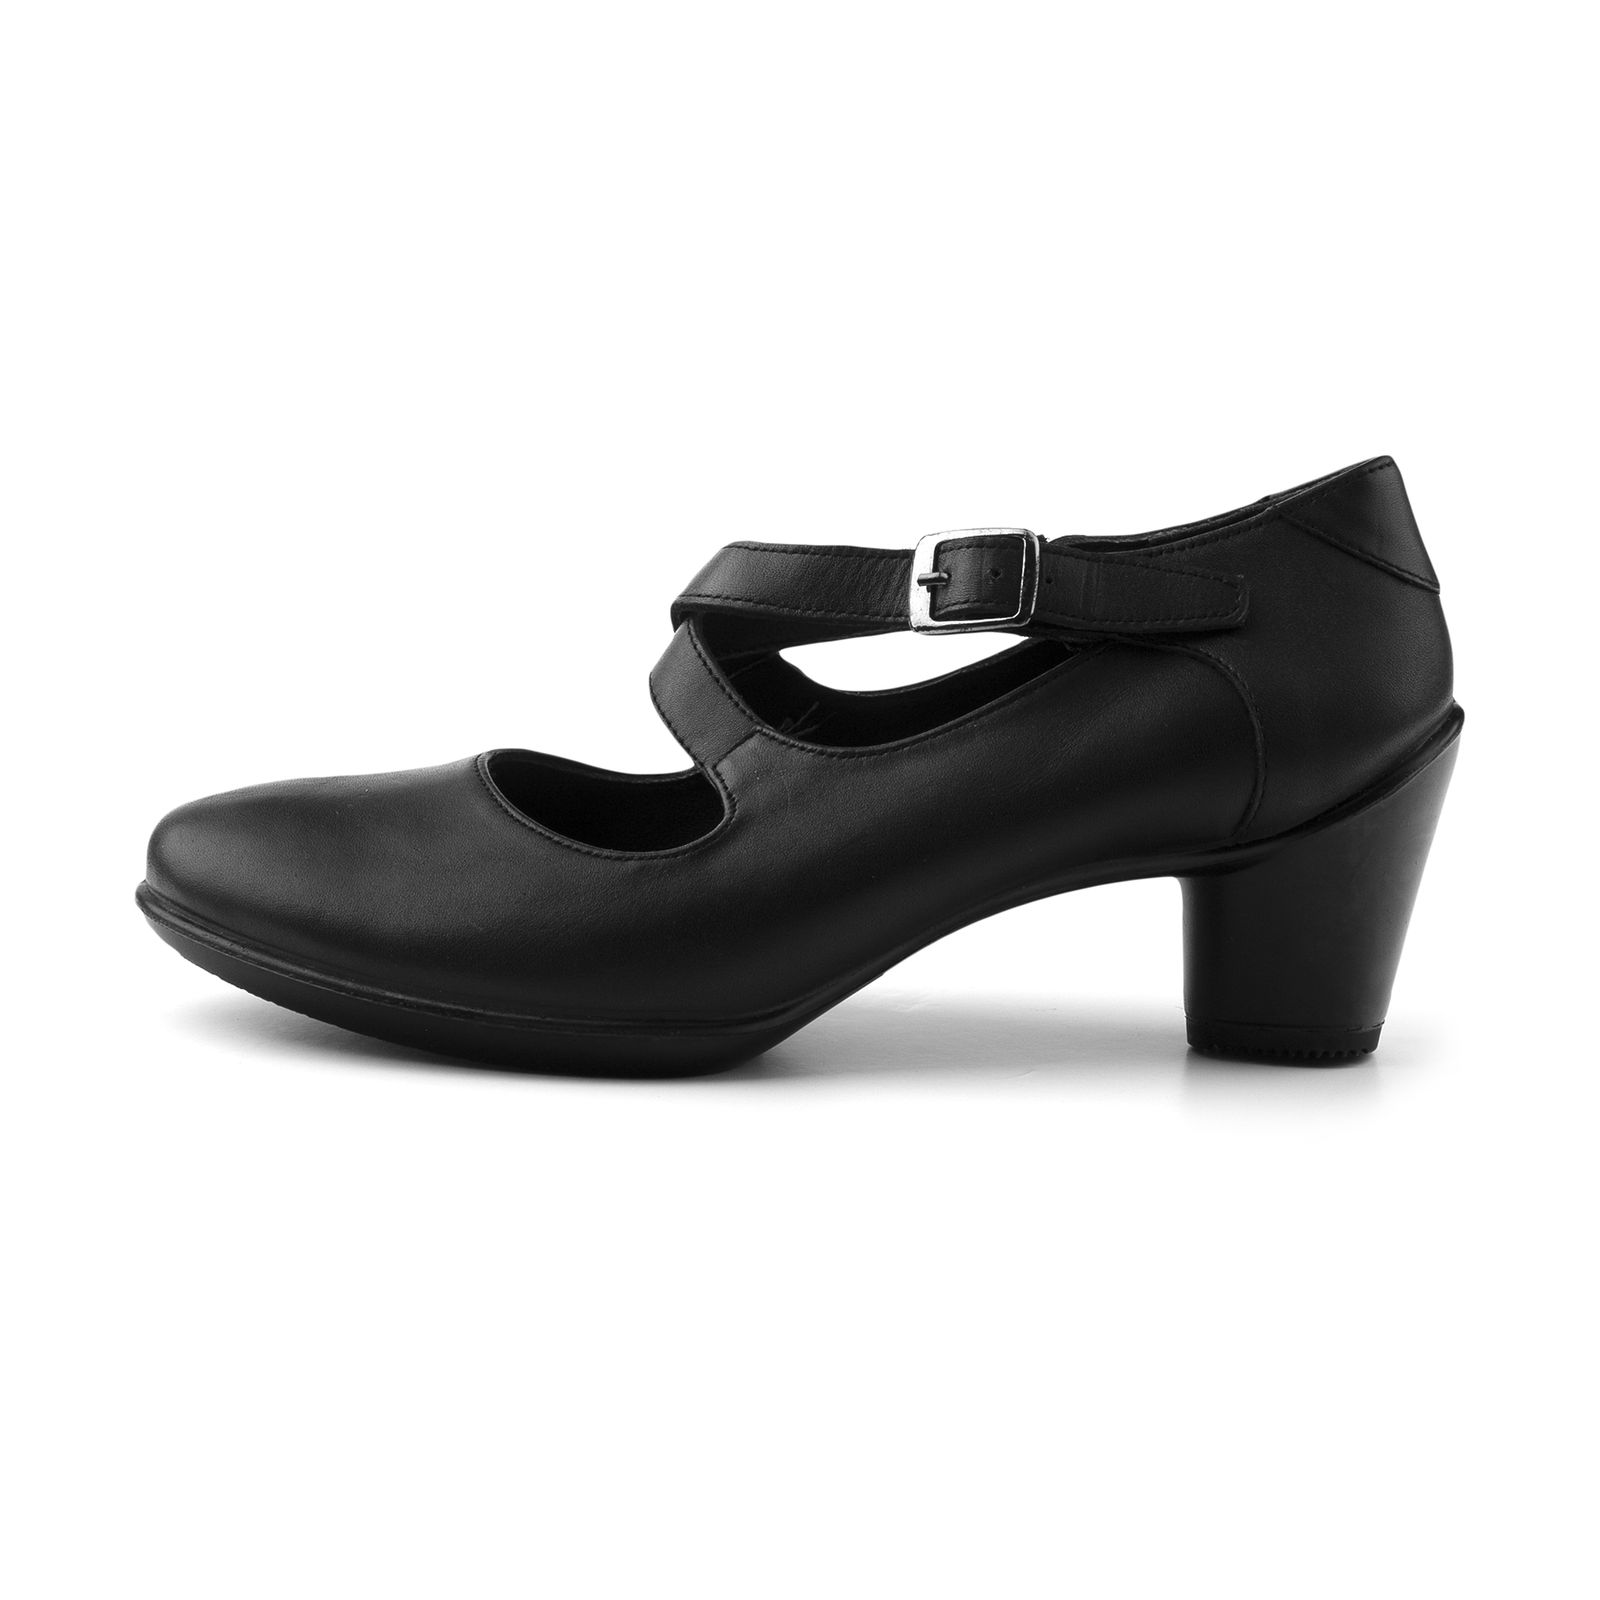 کفش زنانه دنیلی مدل Artmita - 207110401001 -  - 1